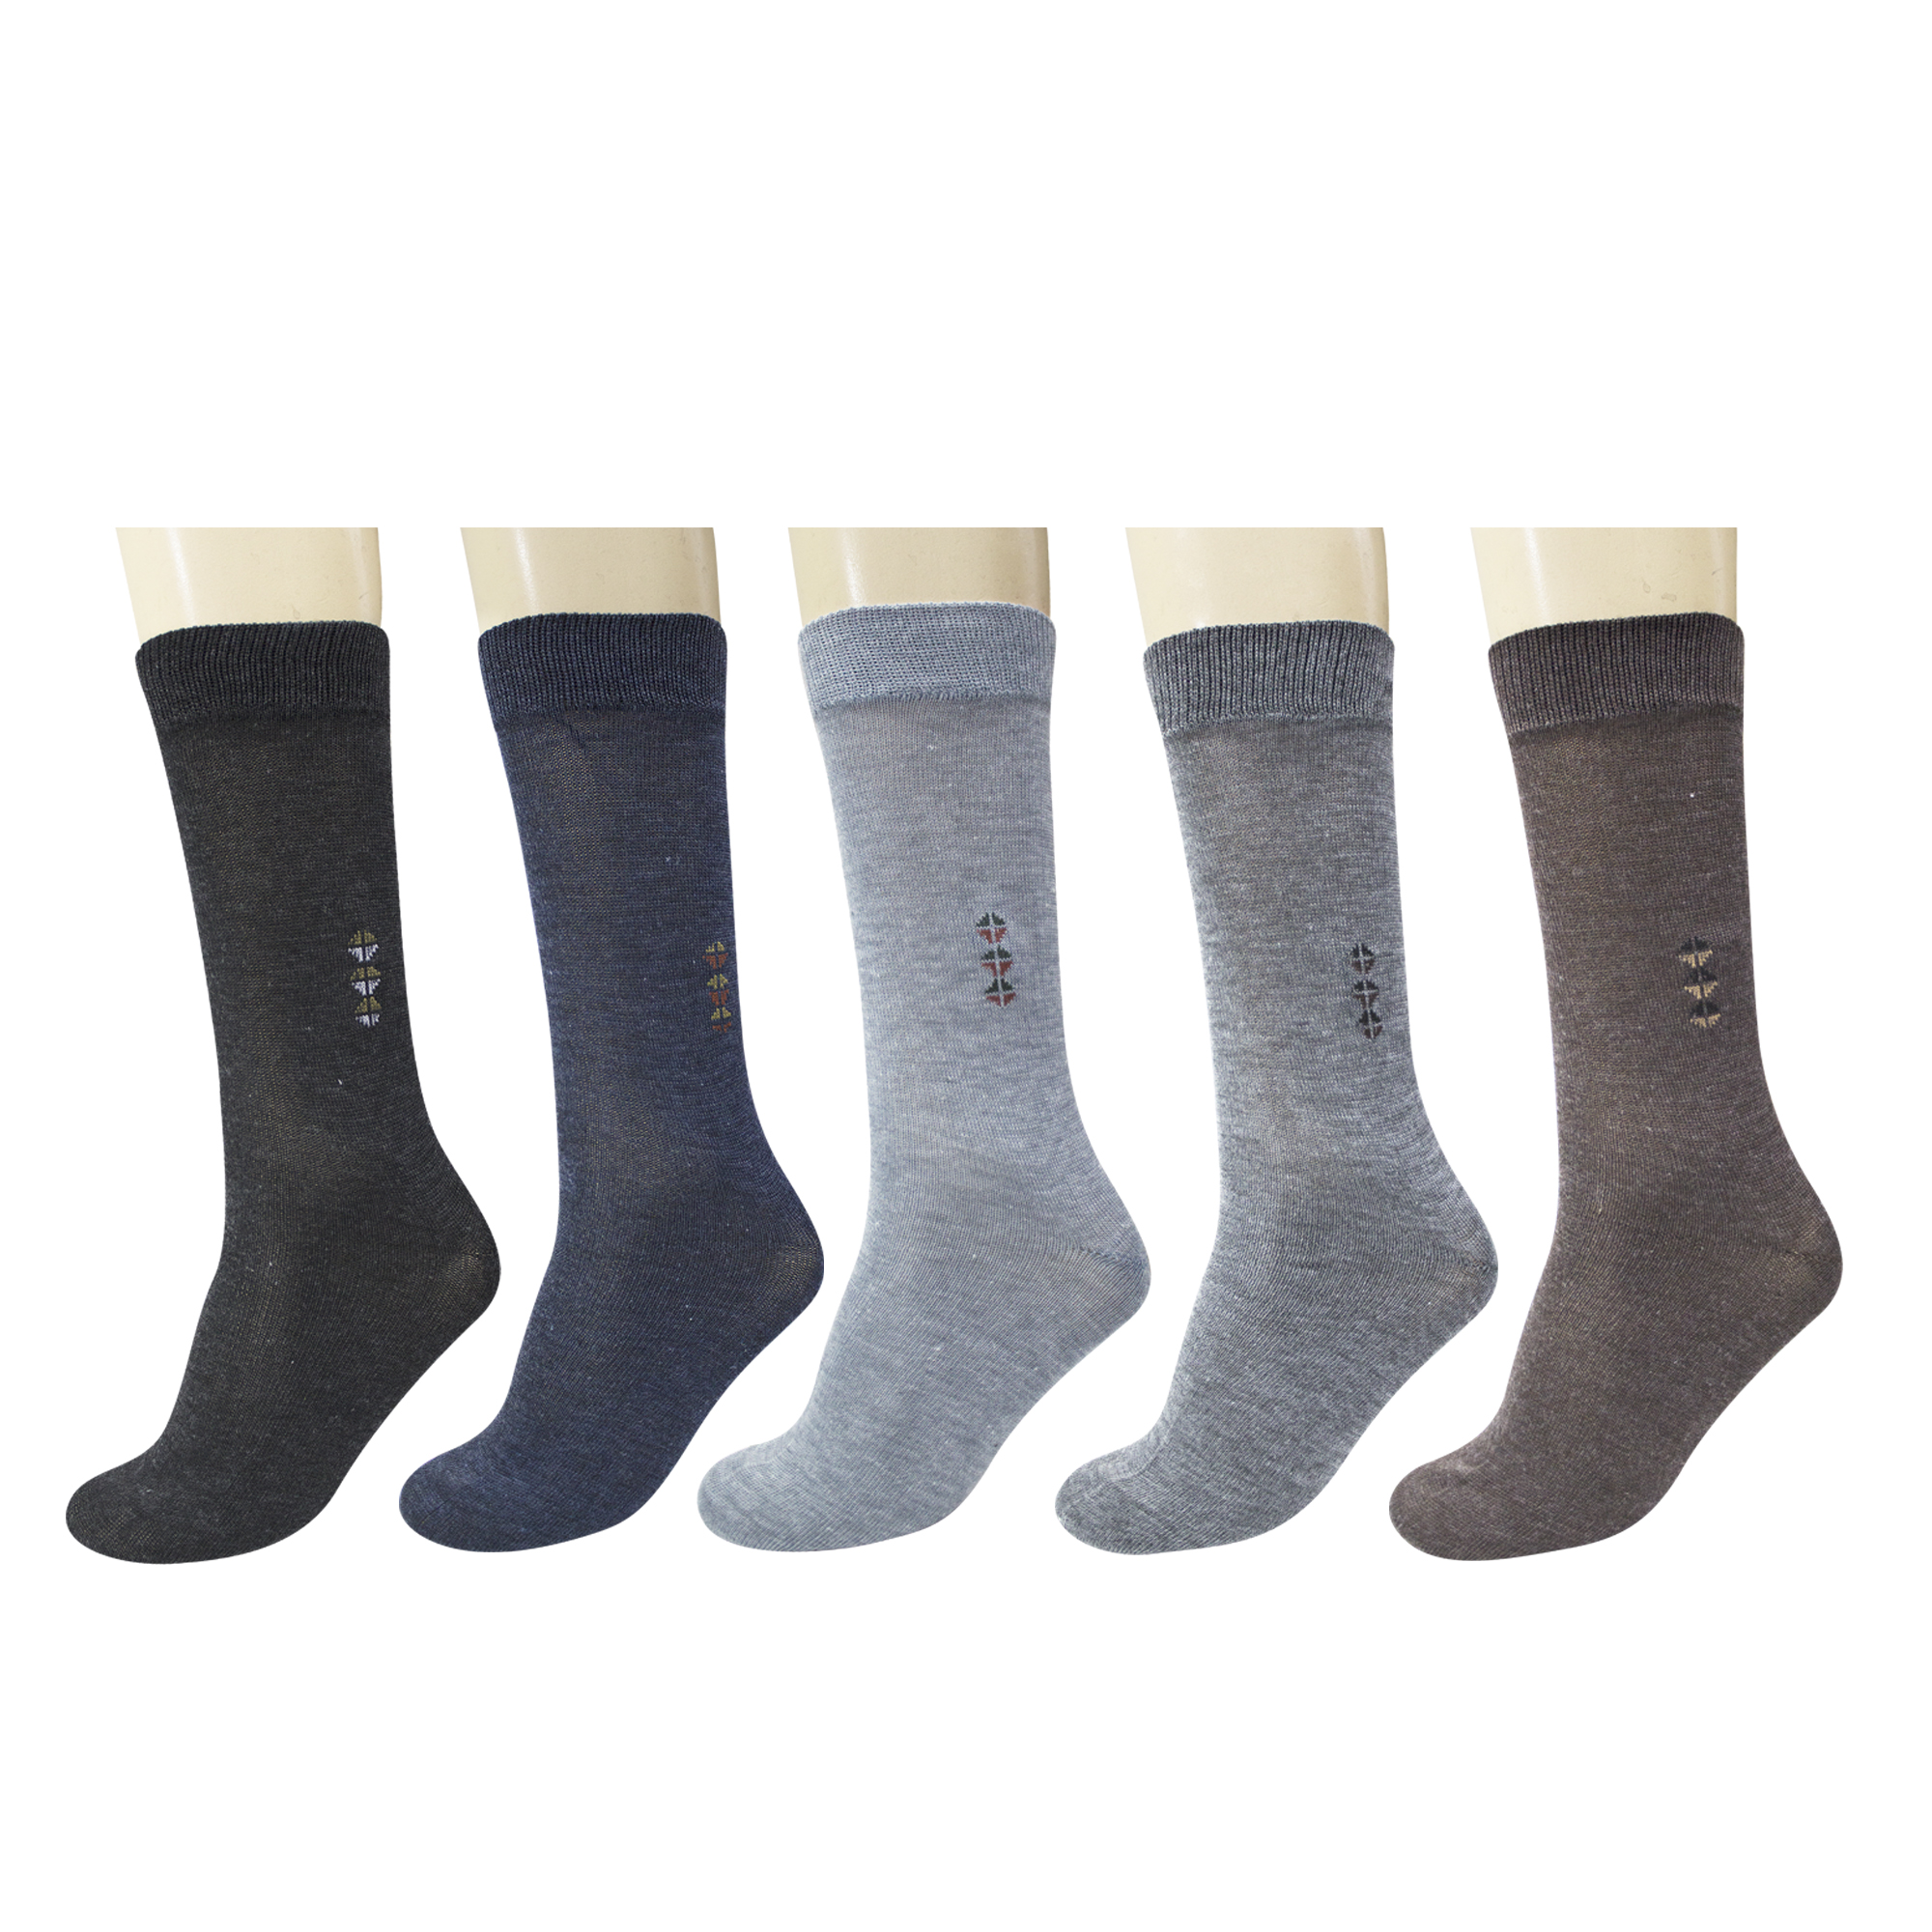 Buy Maroon Multicolour Cotton Set of 5 Men's Full Length Socks Online ...